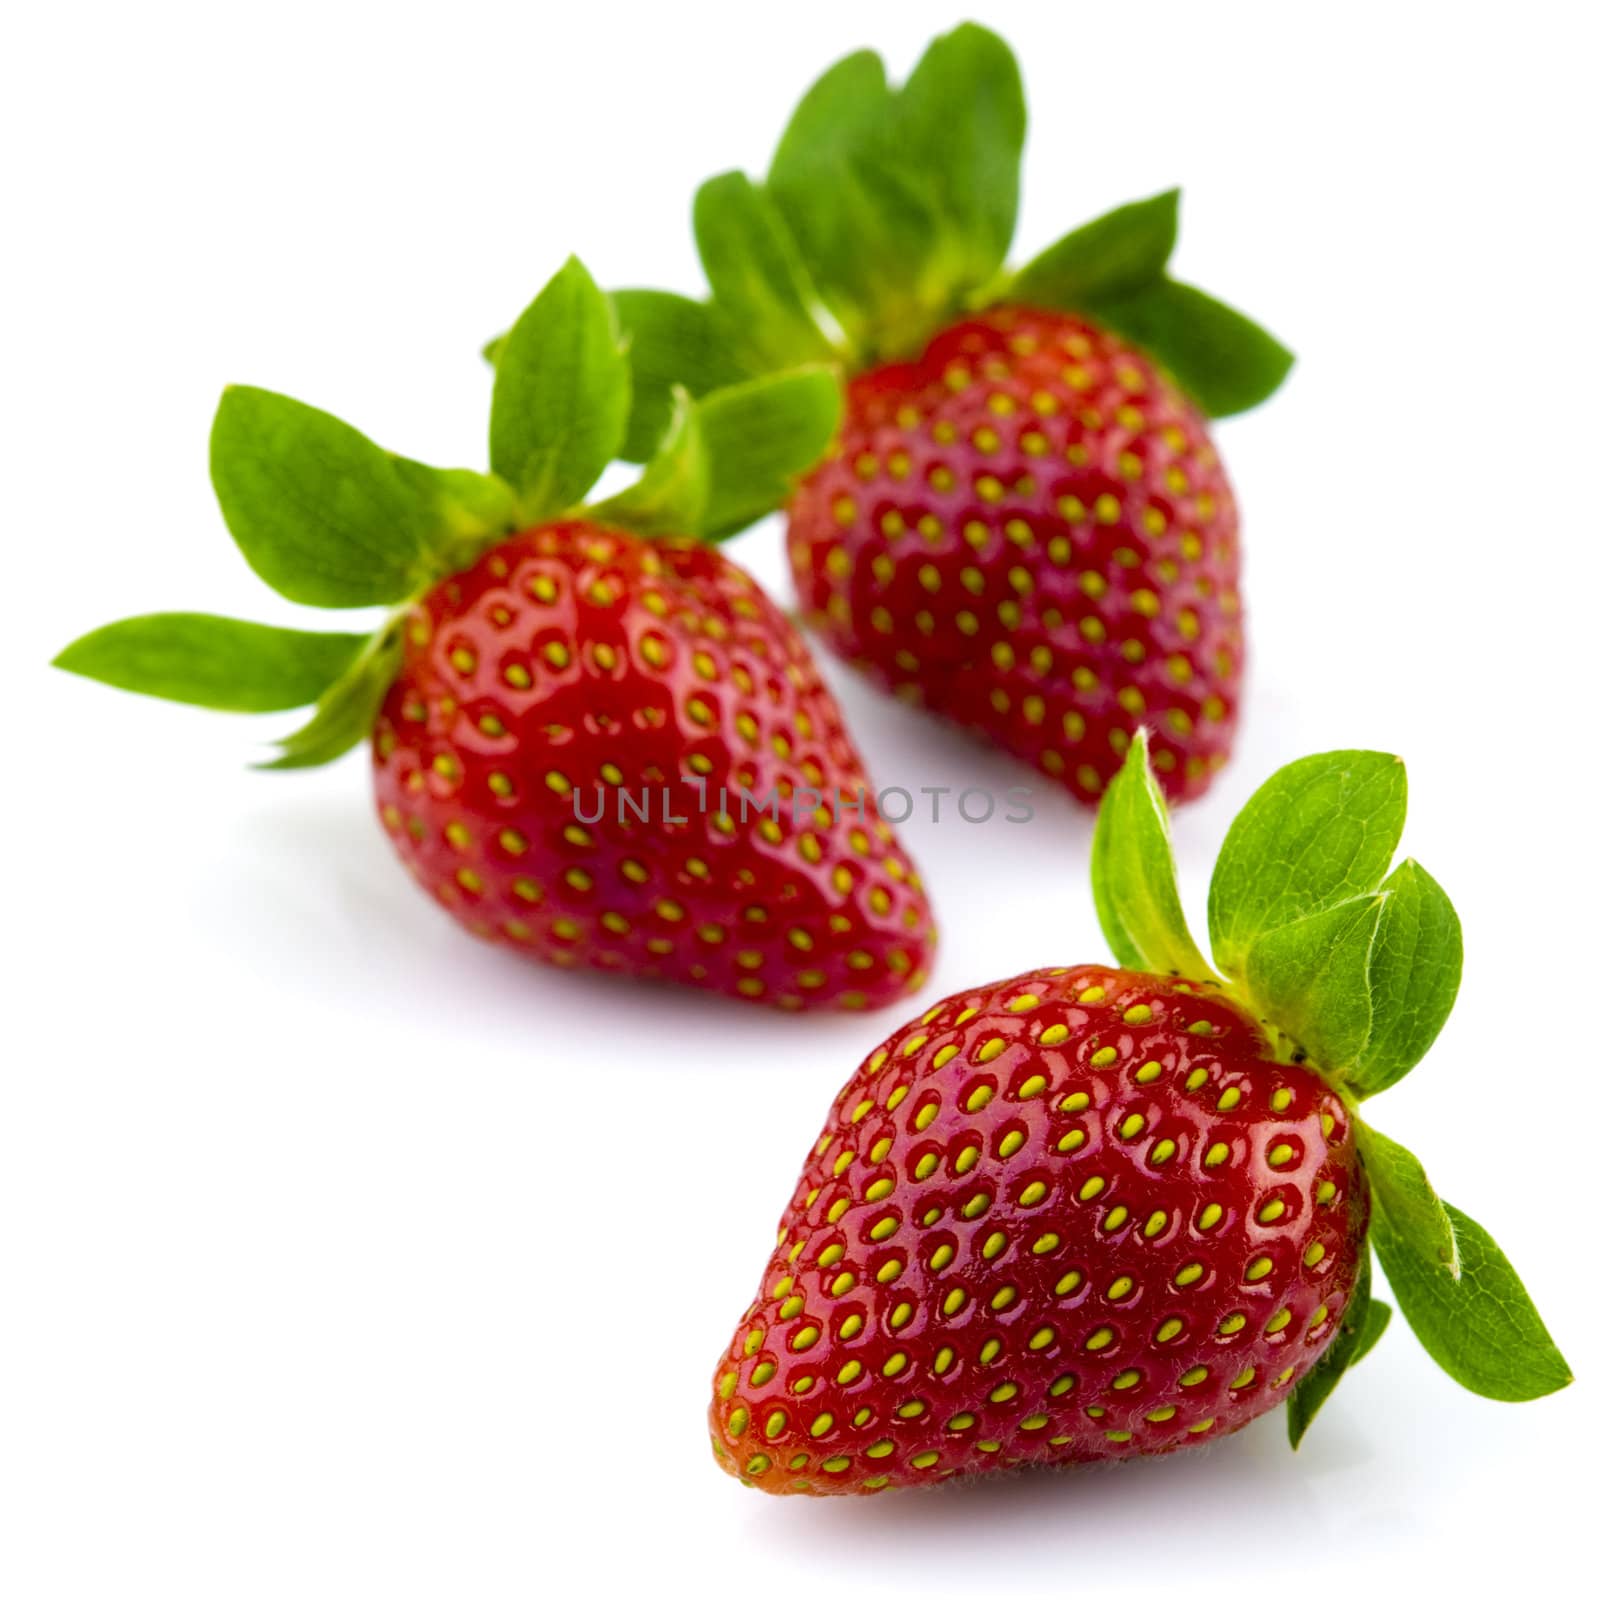 Fresh strawberries by szefei